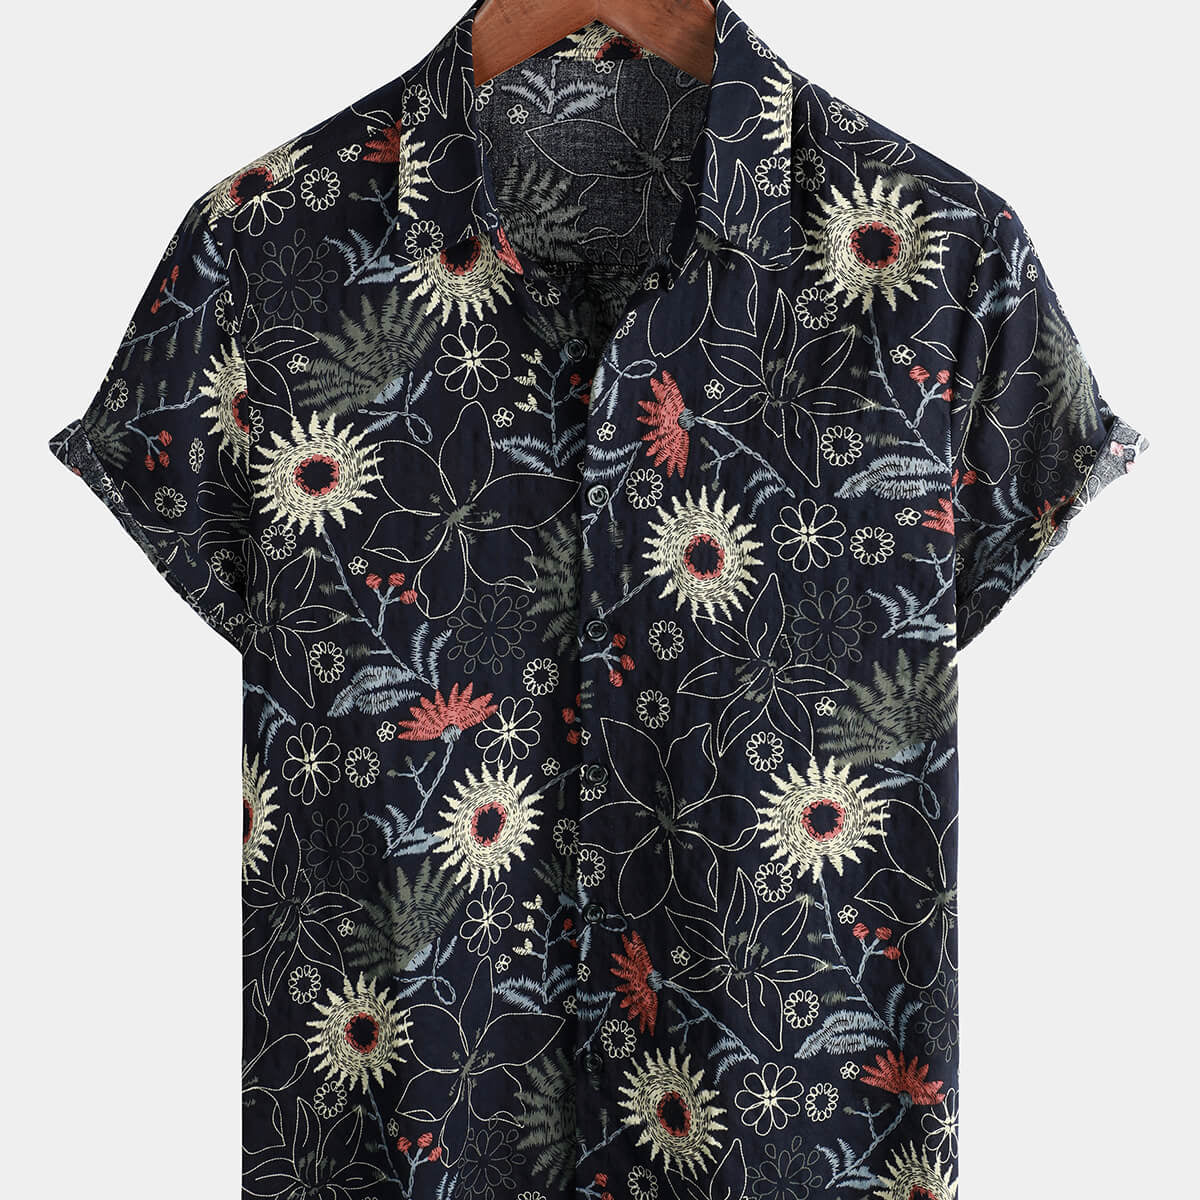 Chemise hawaïenne boutonnée pour homme en coton à manches courtes avec motifs de tournesols floraux idéale pour les vacances estivales et les croisières